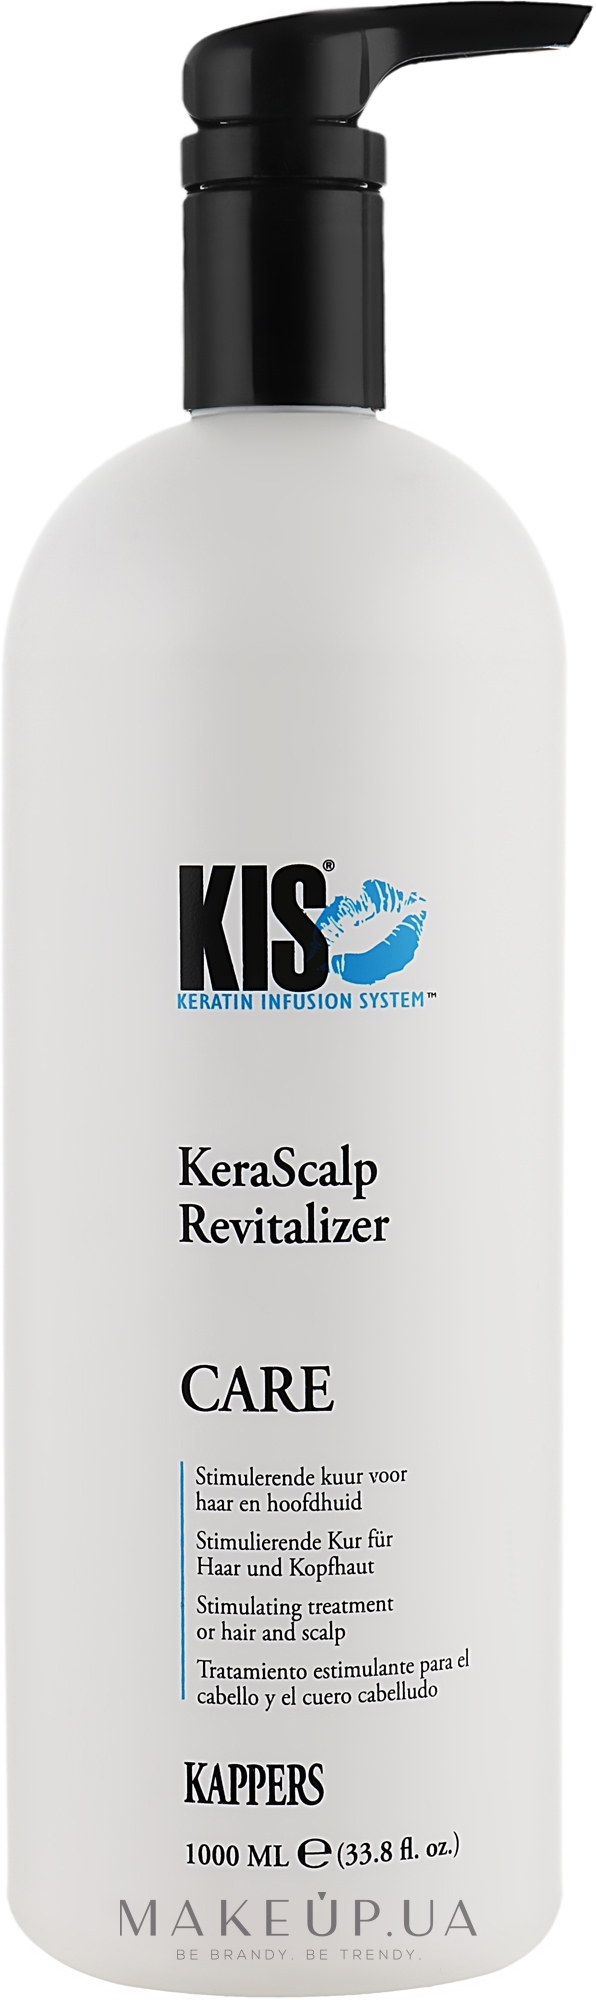 Маска для кожи головы и тонких волос - Kis KeraScalp Revitalizer Mask — фото 1000ml